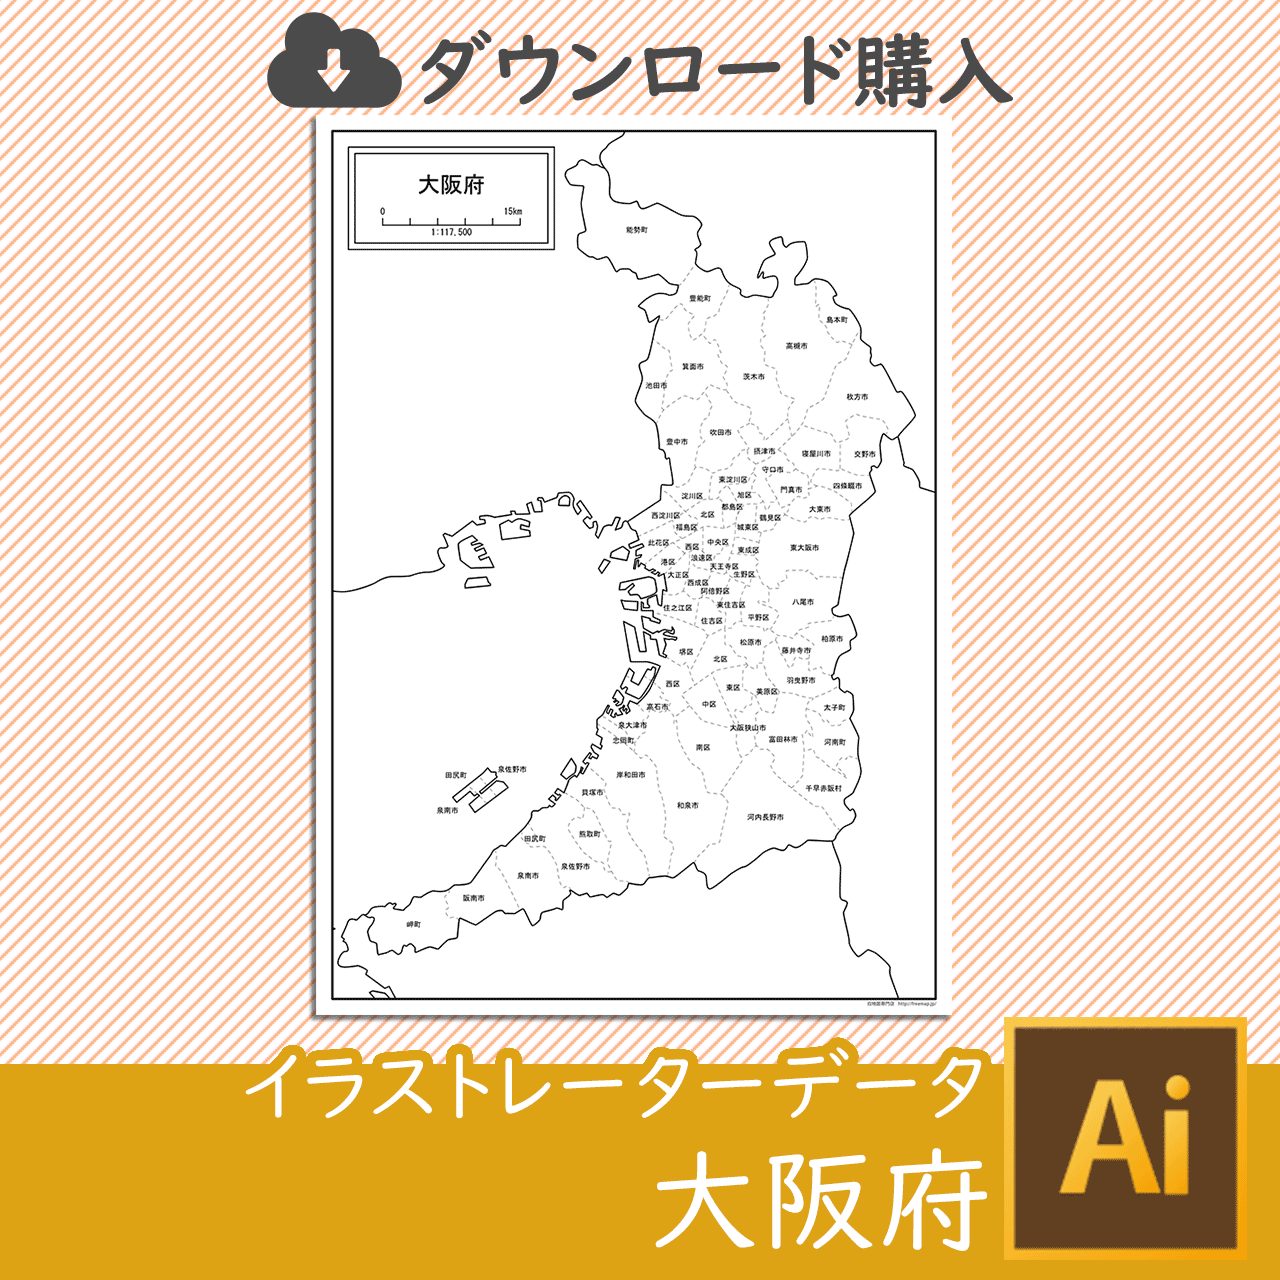 大阪府の白地図のサムネイル